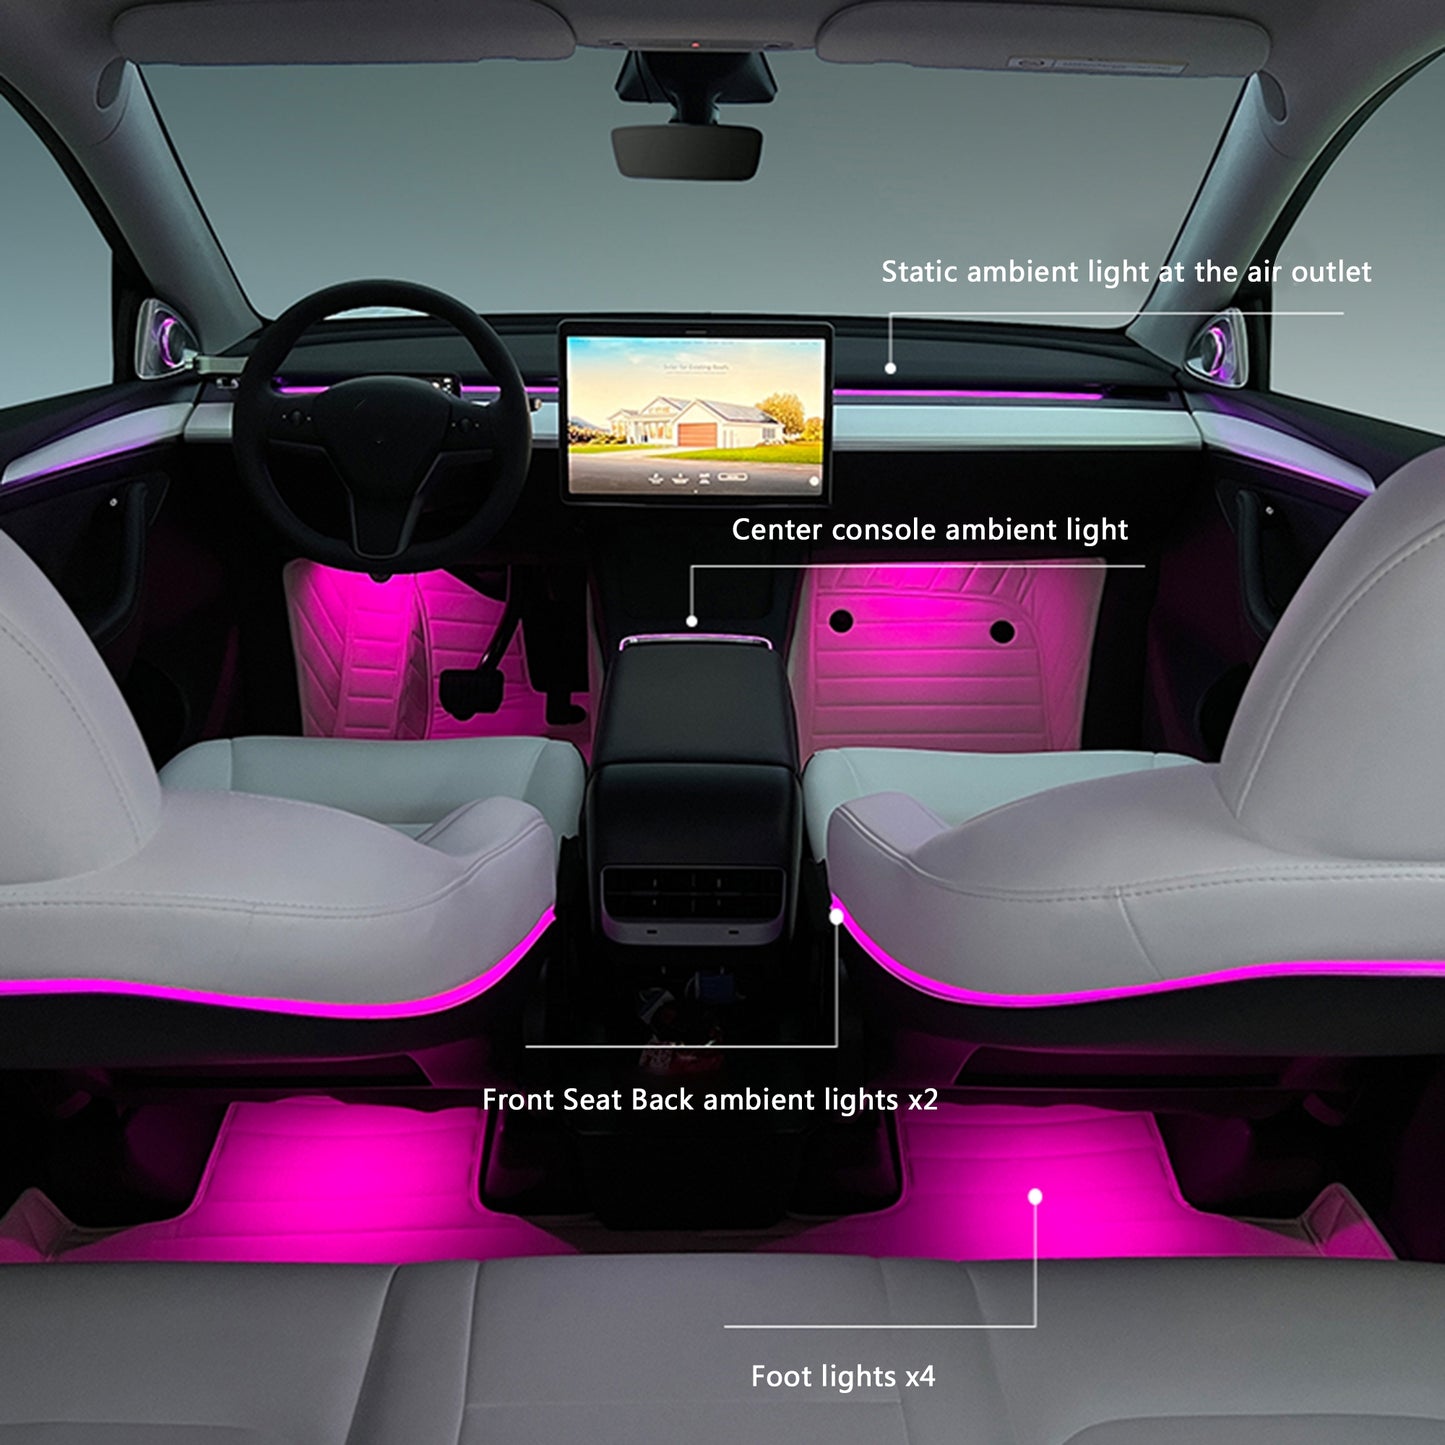 Éclairage intérieur ambiant de voiture au néon RGB LED Strip Lights APP Control avec plusieurs modes de scène pour le modèle 3 / Y